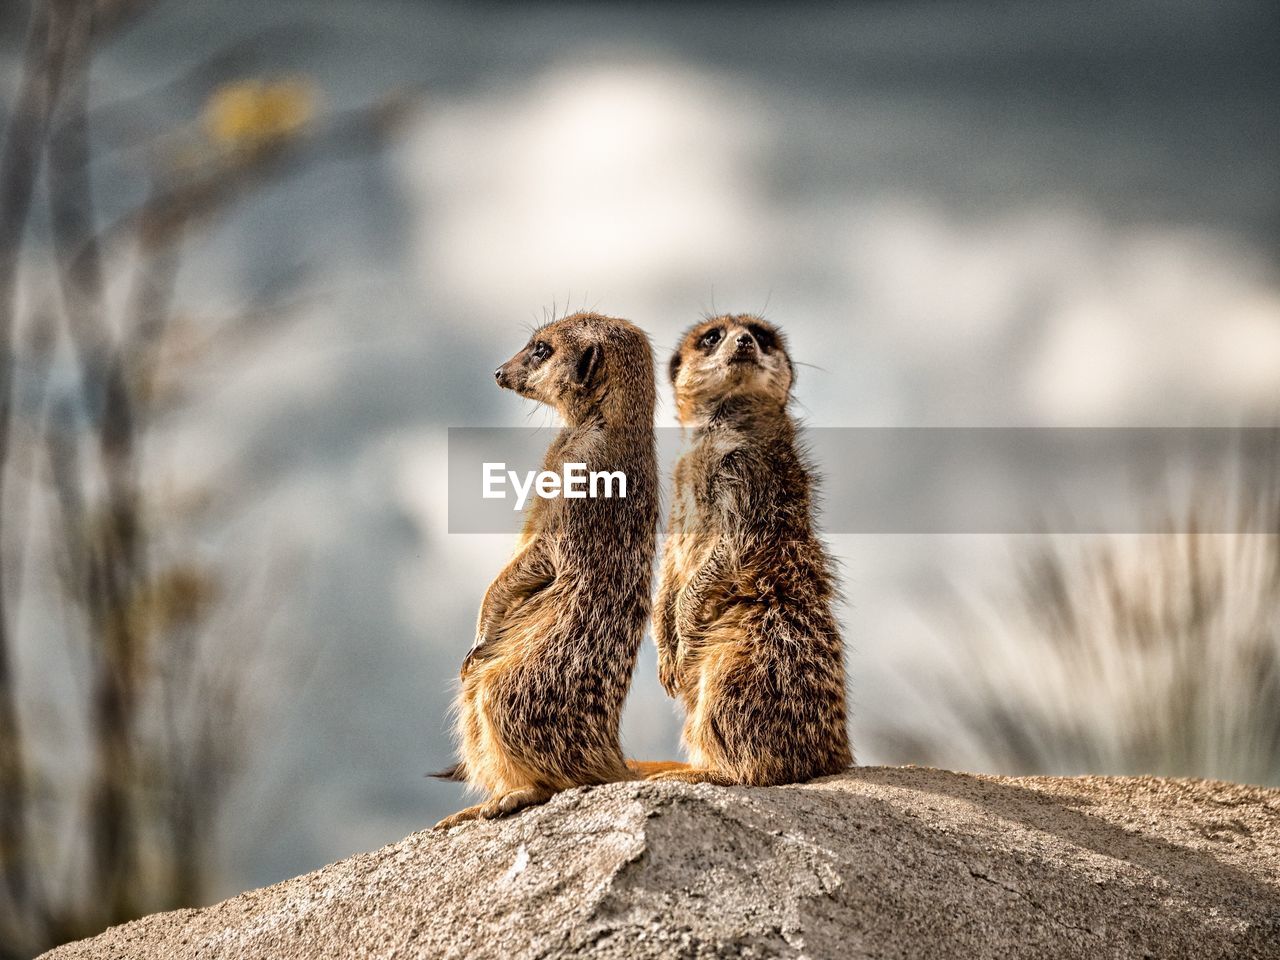 Close-up of meerkats standing on rock